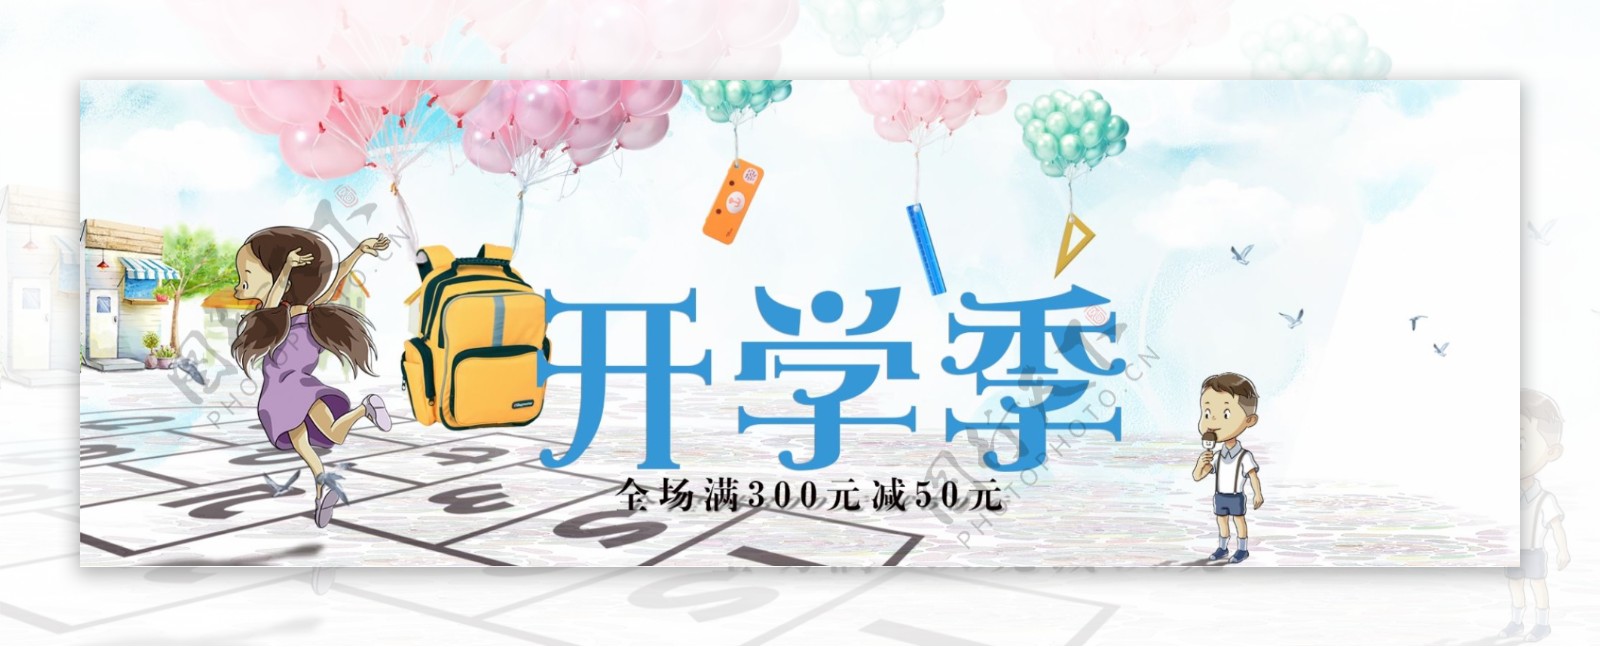 电商淘宝天猫京东开学季文具气球满减促销海报banner模板设计